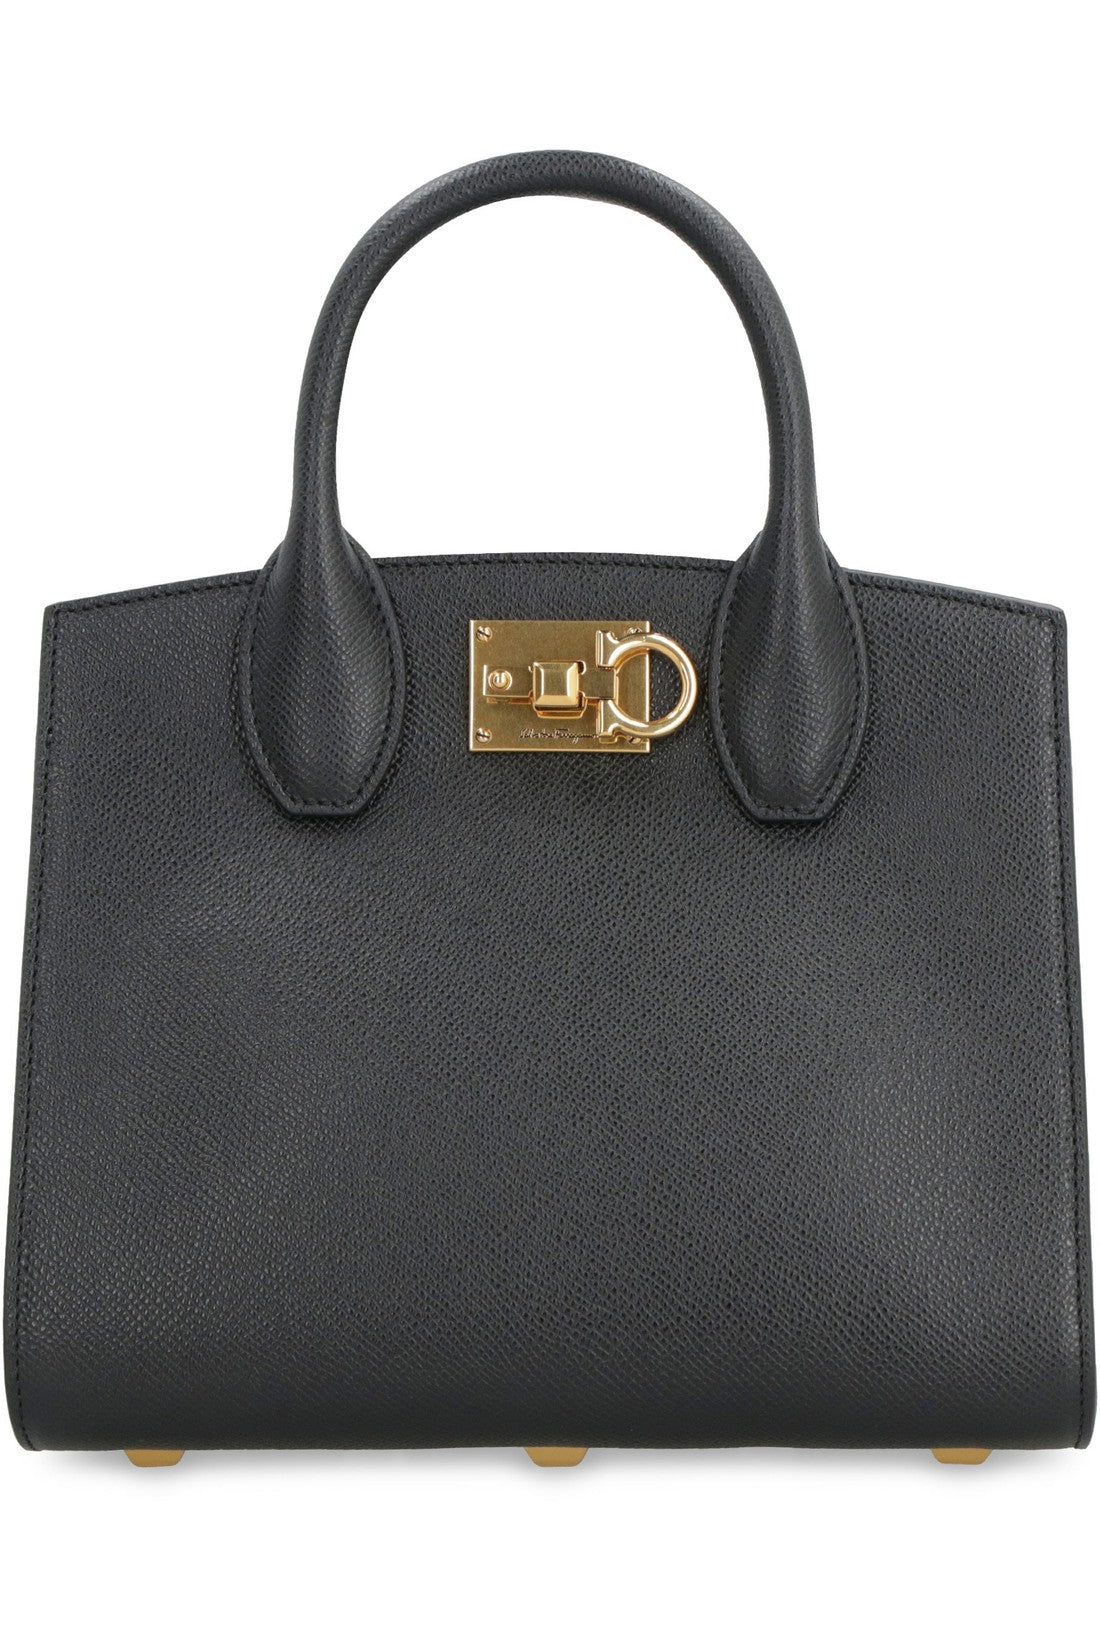 FERRAGAMO-OUTLET-SALE-Studio Box leather mini handbag-ARCHIVIST